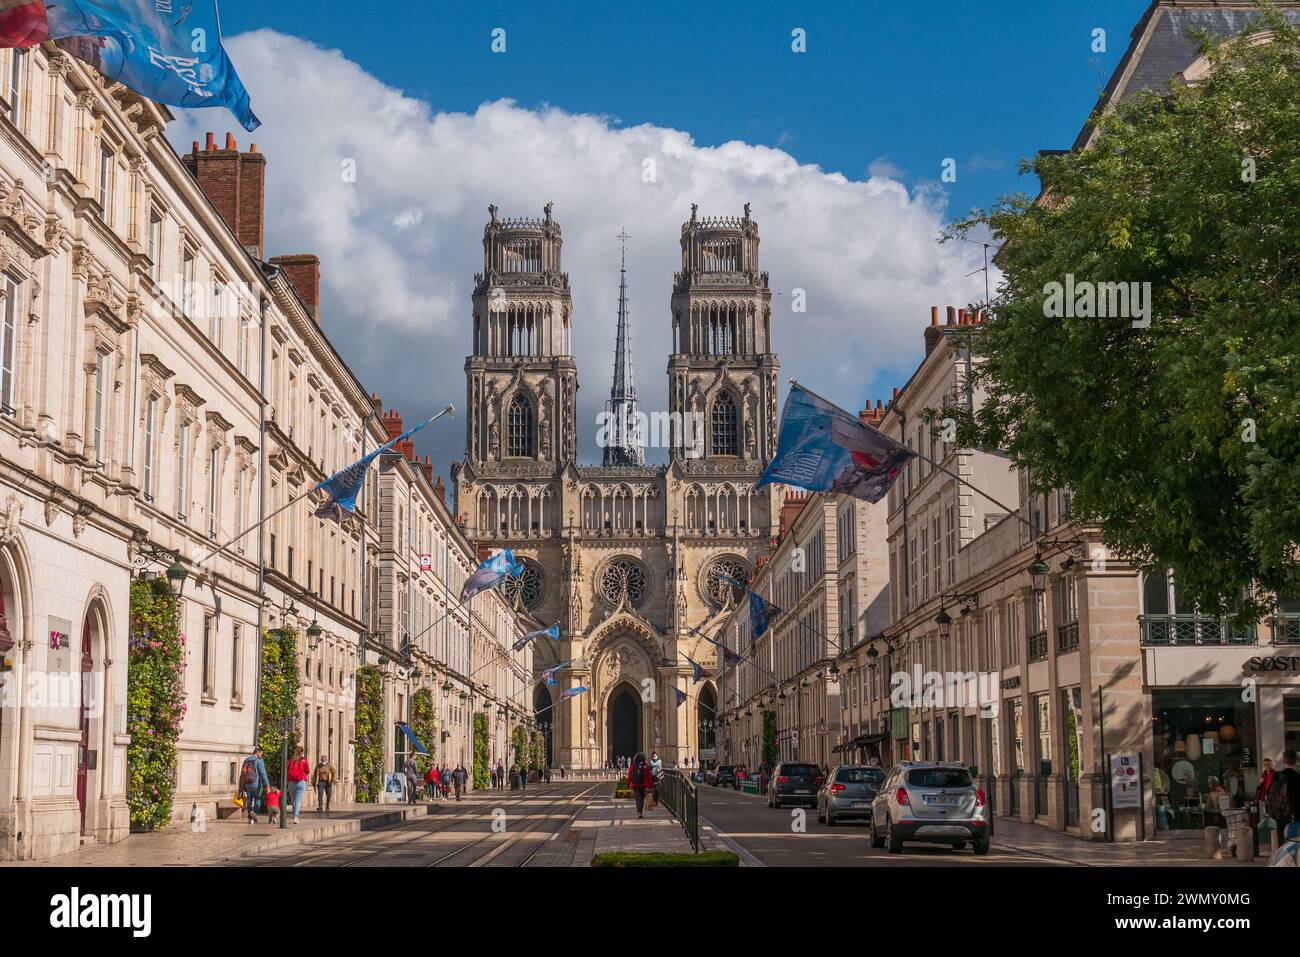 Orleans, Frankreich - 6. Oktober 2021: Die Kathedrale von Orleans, die Fassade und die Straße mit einigen Gebäuden darstellt Stockfoto